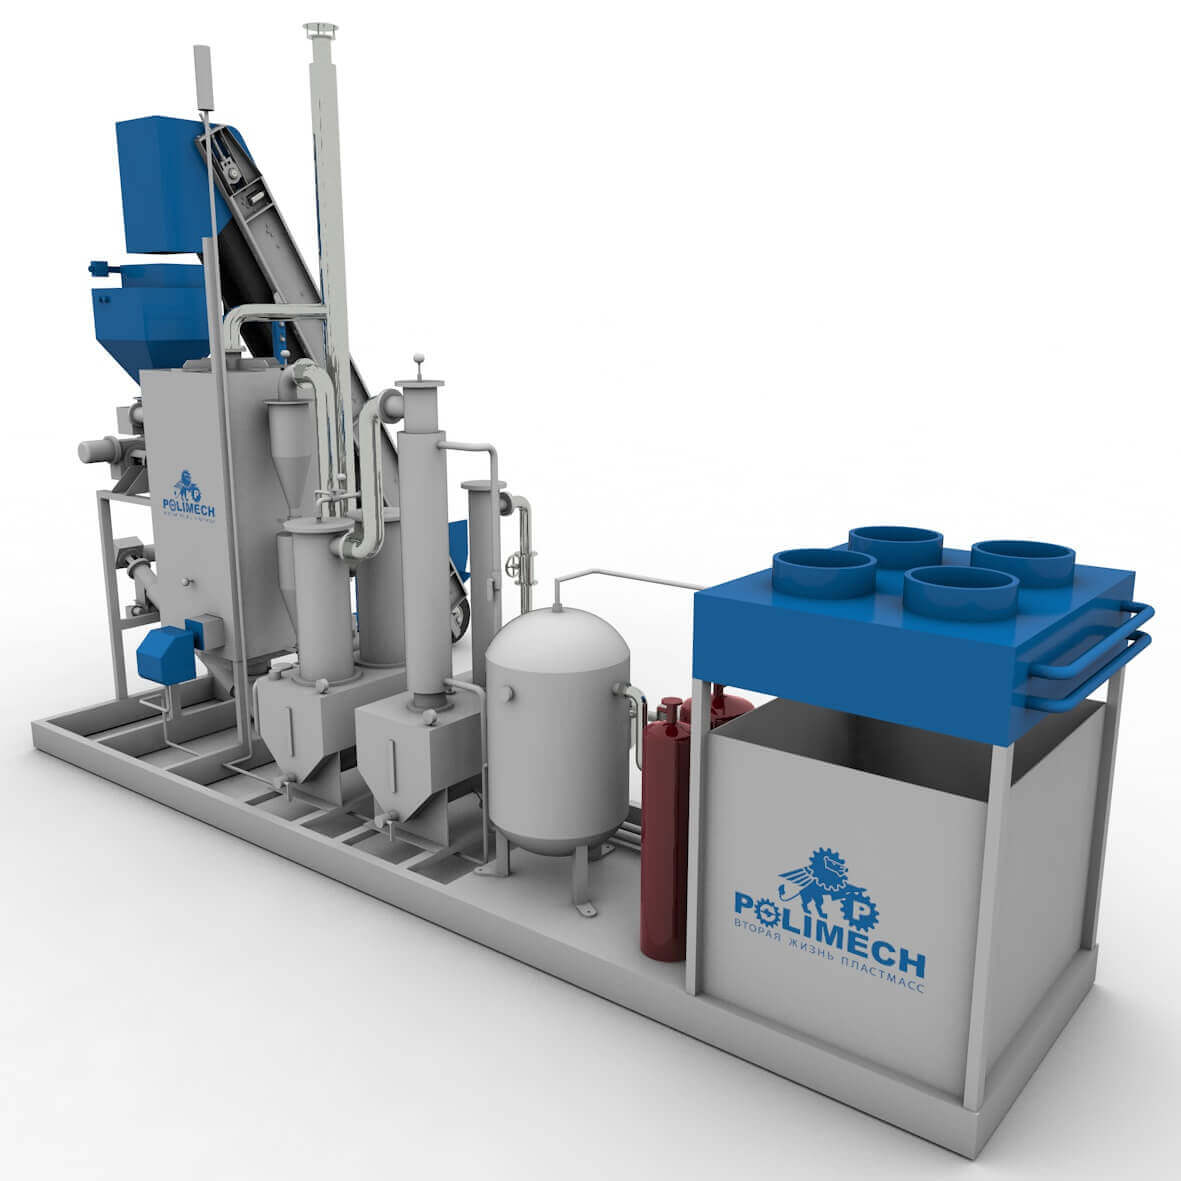 Компания Polimech ведет разработки перспективной пиролизной установки, которая позволит получать газ и топливо из мусора.